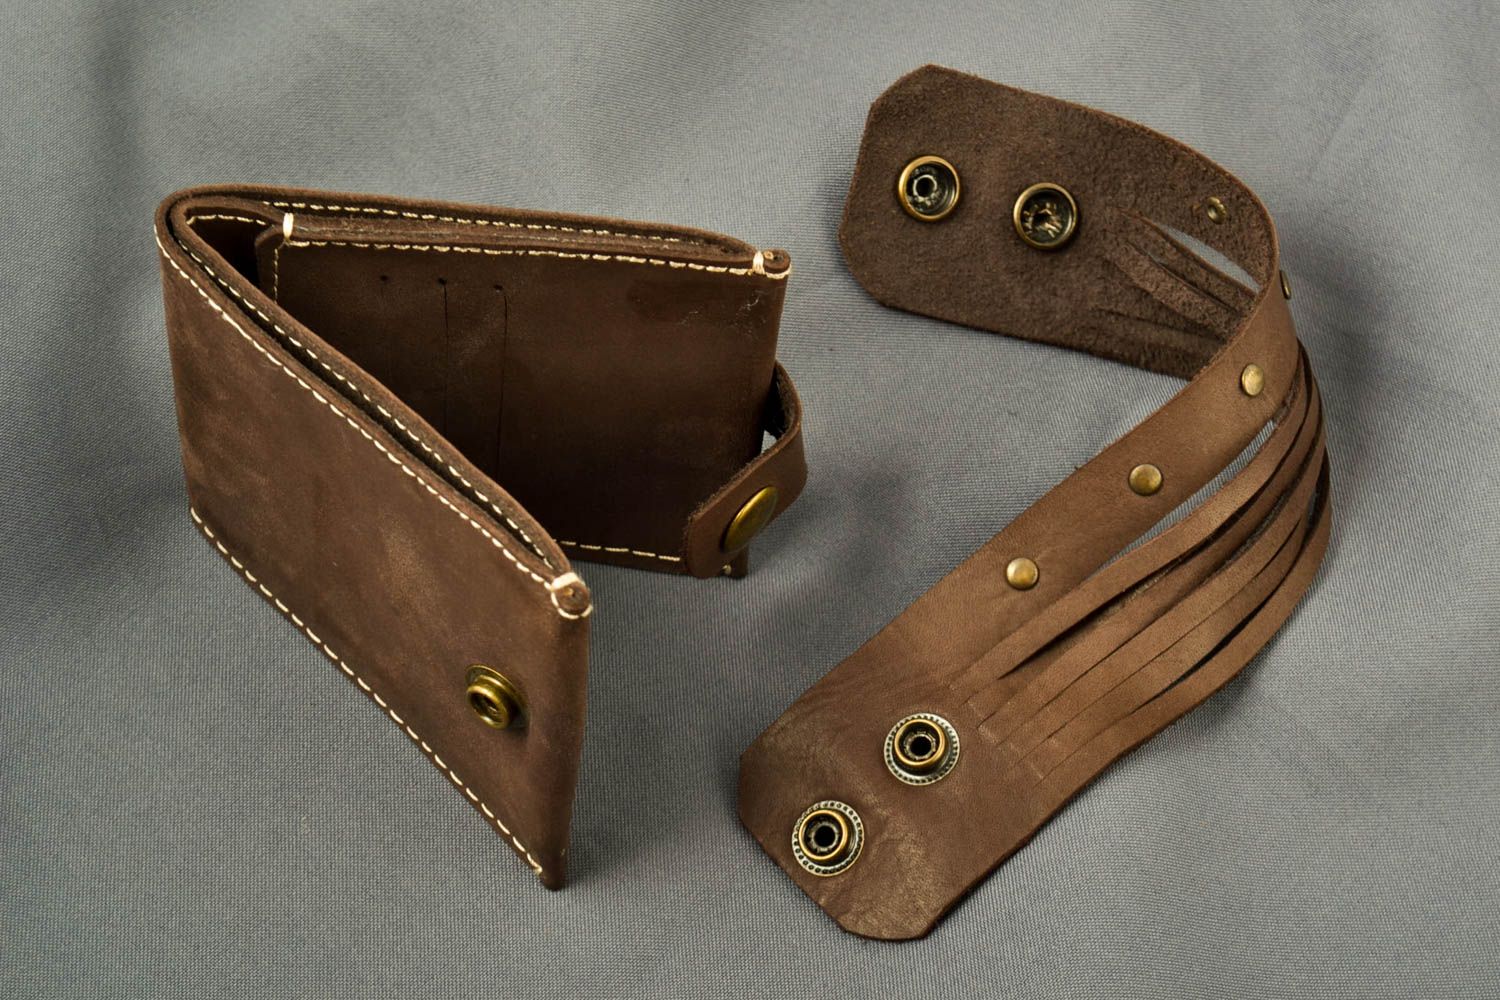 Pulsera original y billetera de cuero artesanales accesorios de moda masculina foto 1